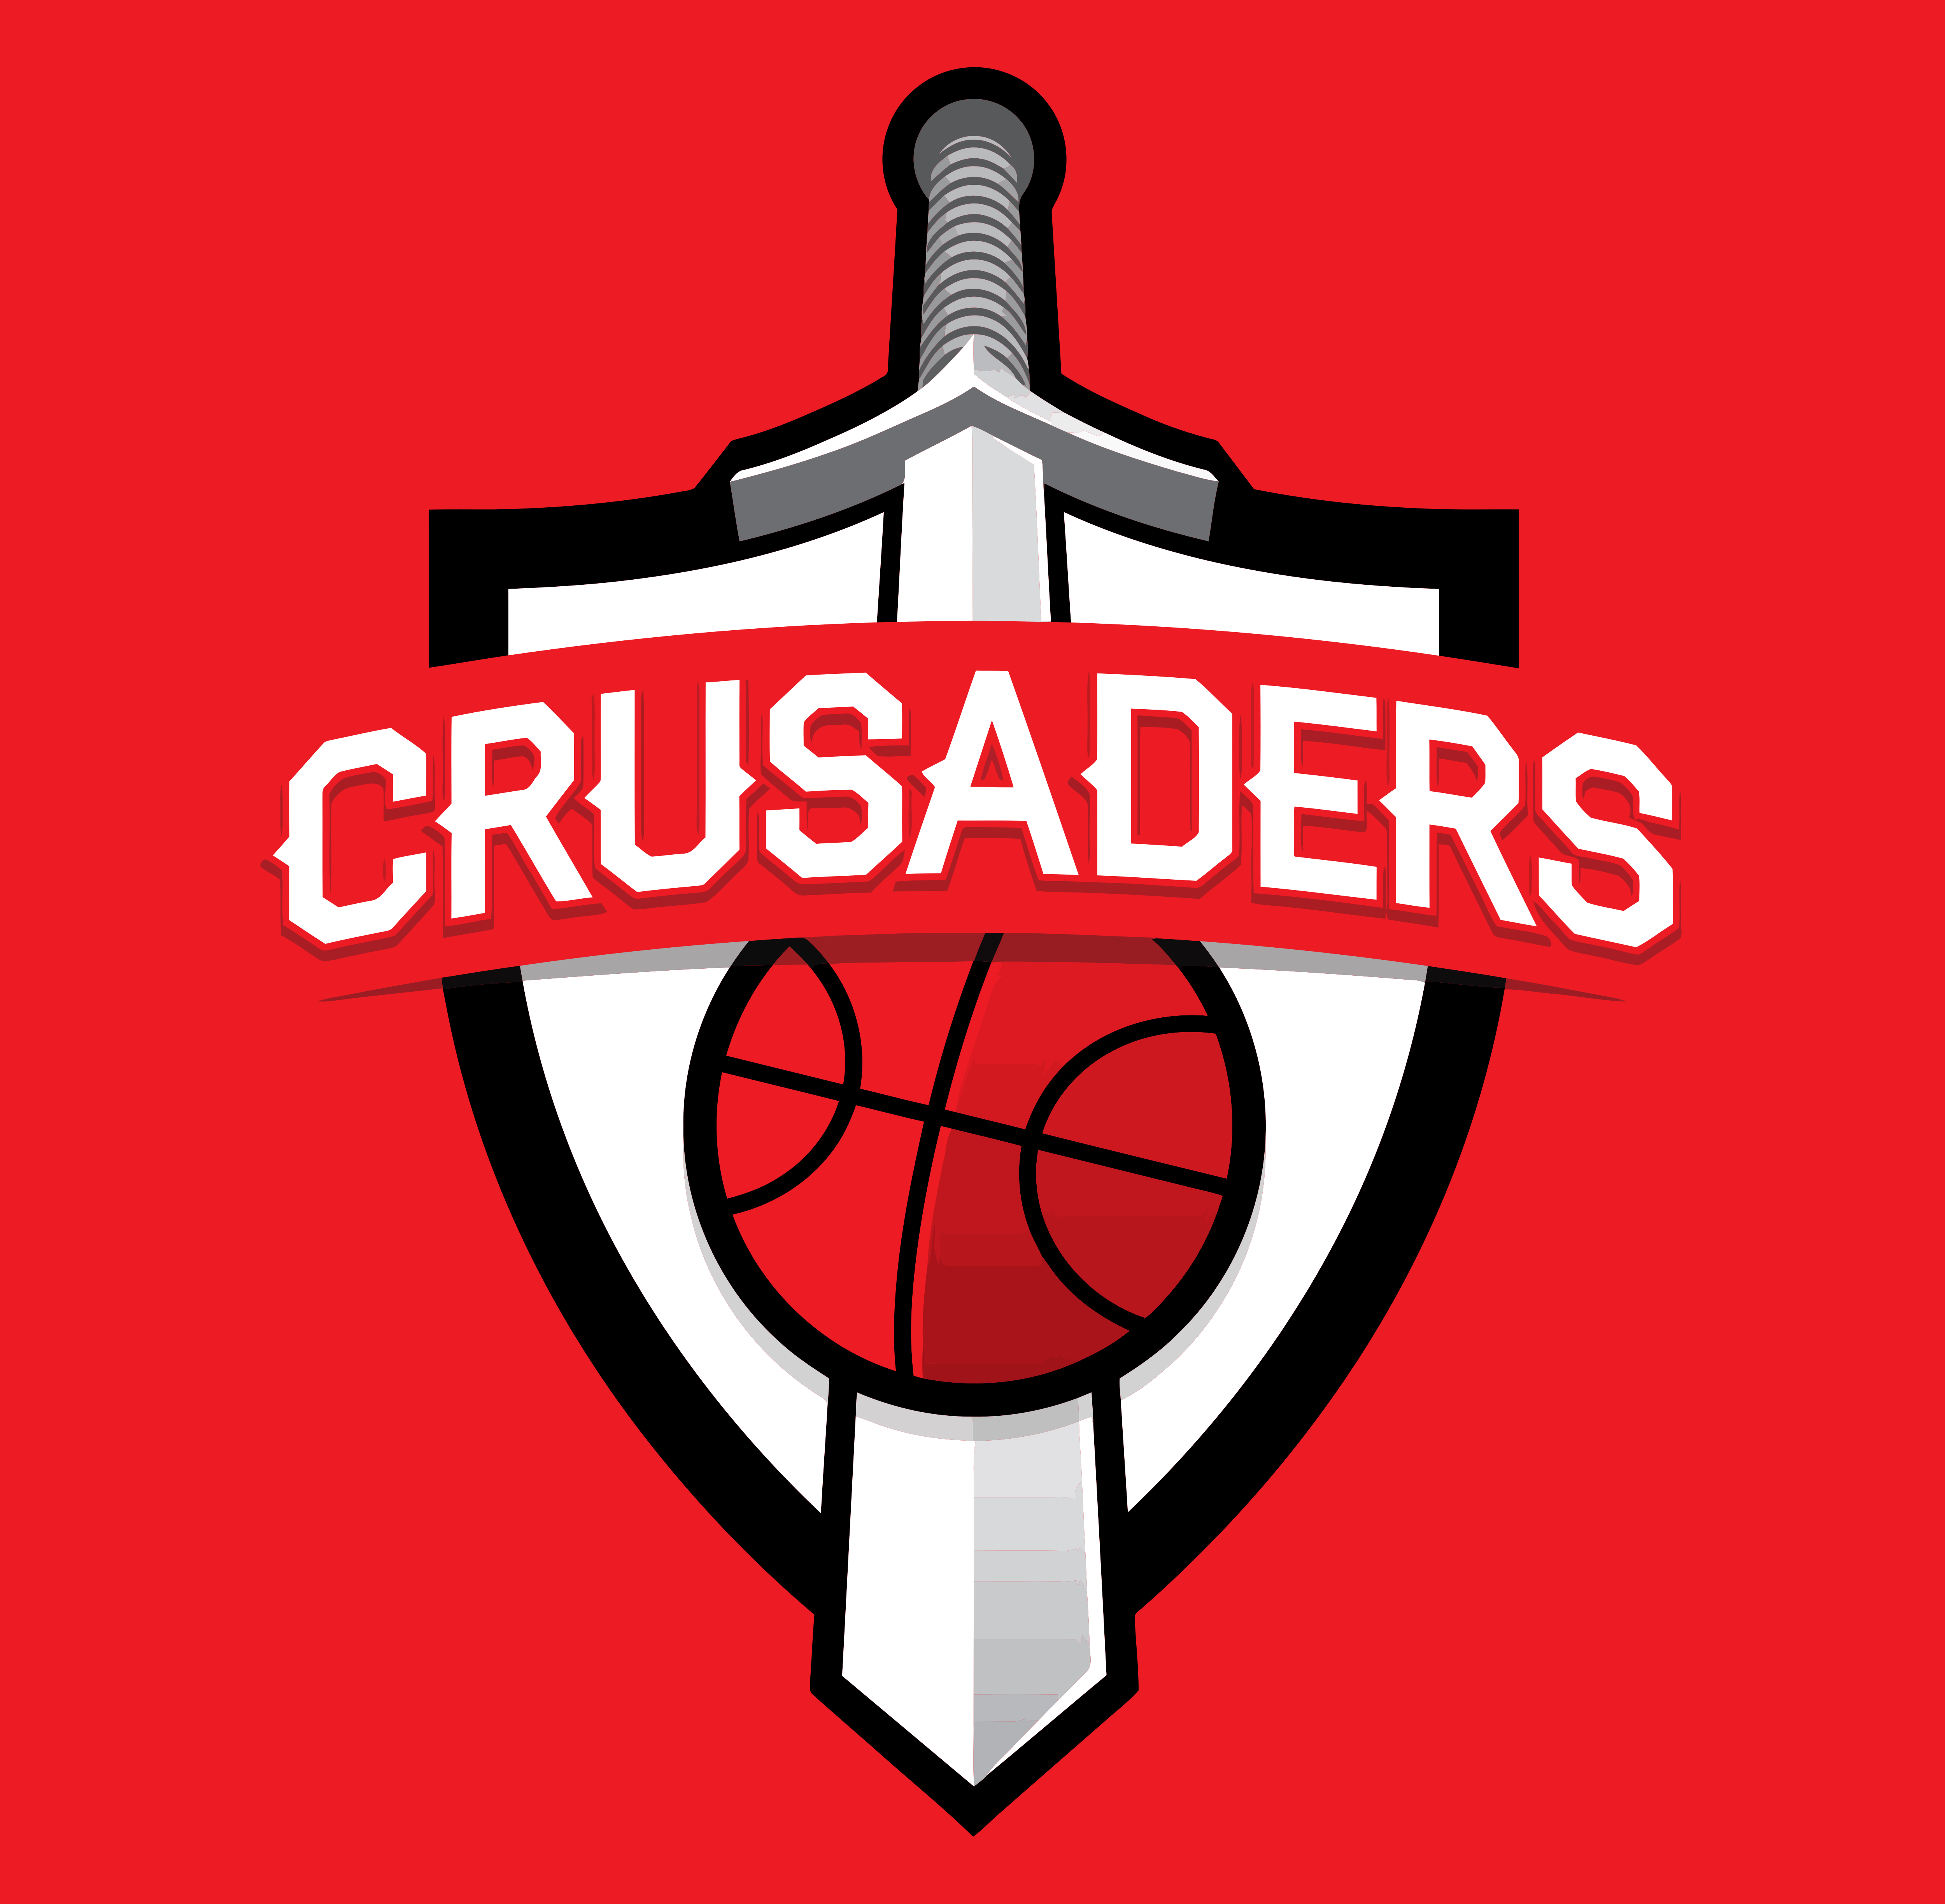 Crusaders Logo - Kent Crusaders – Logos Download